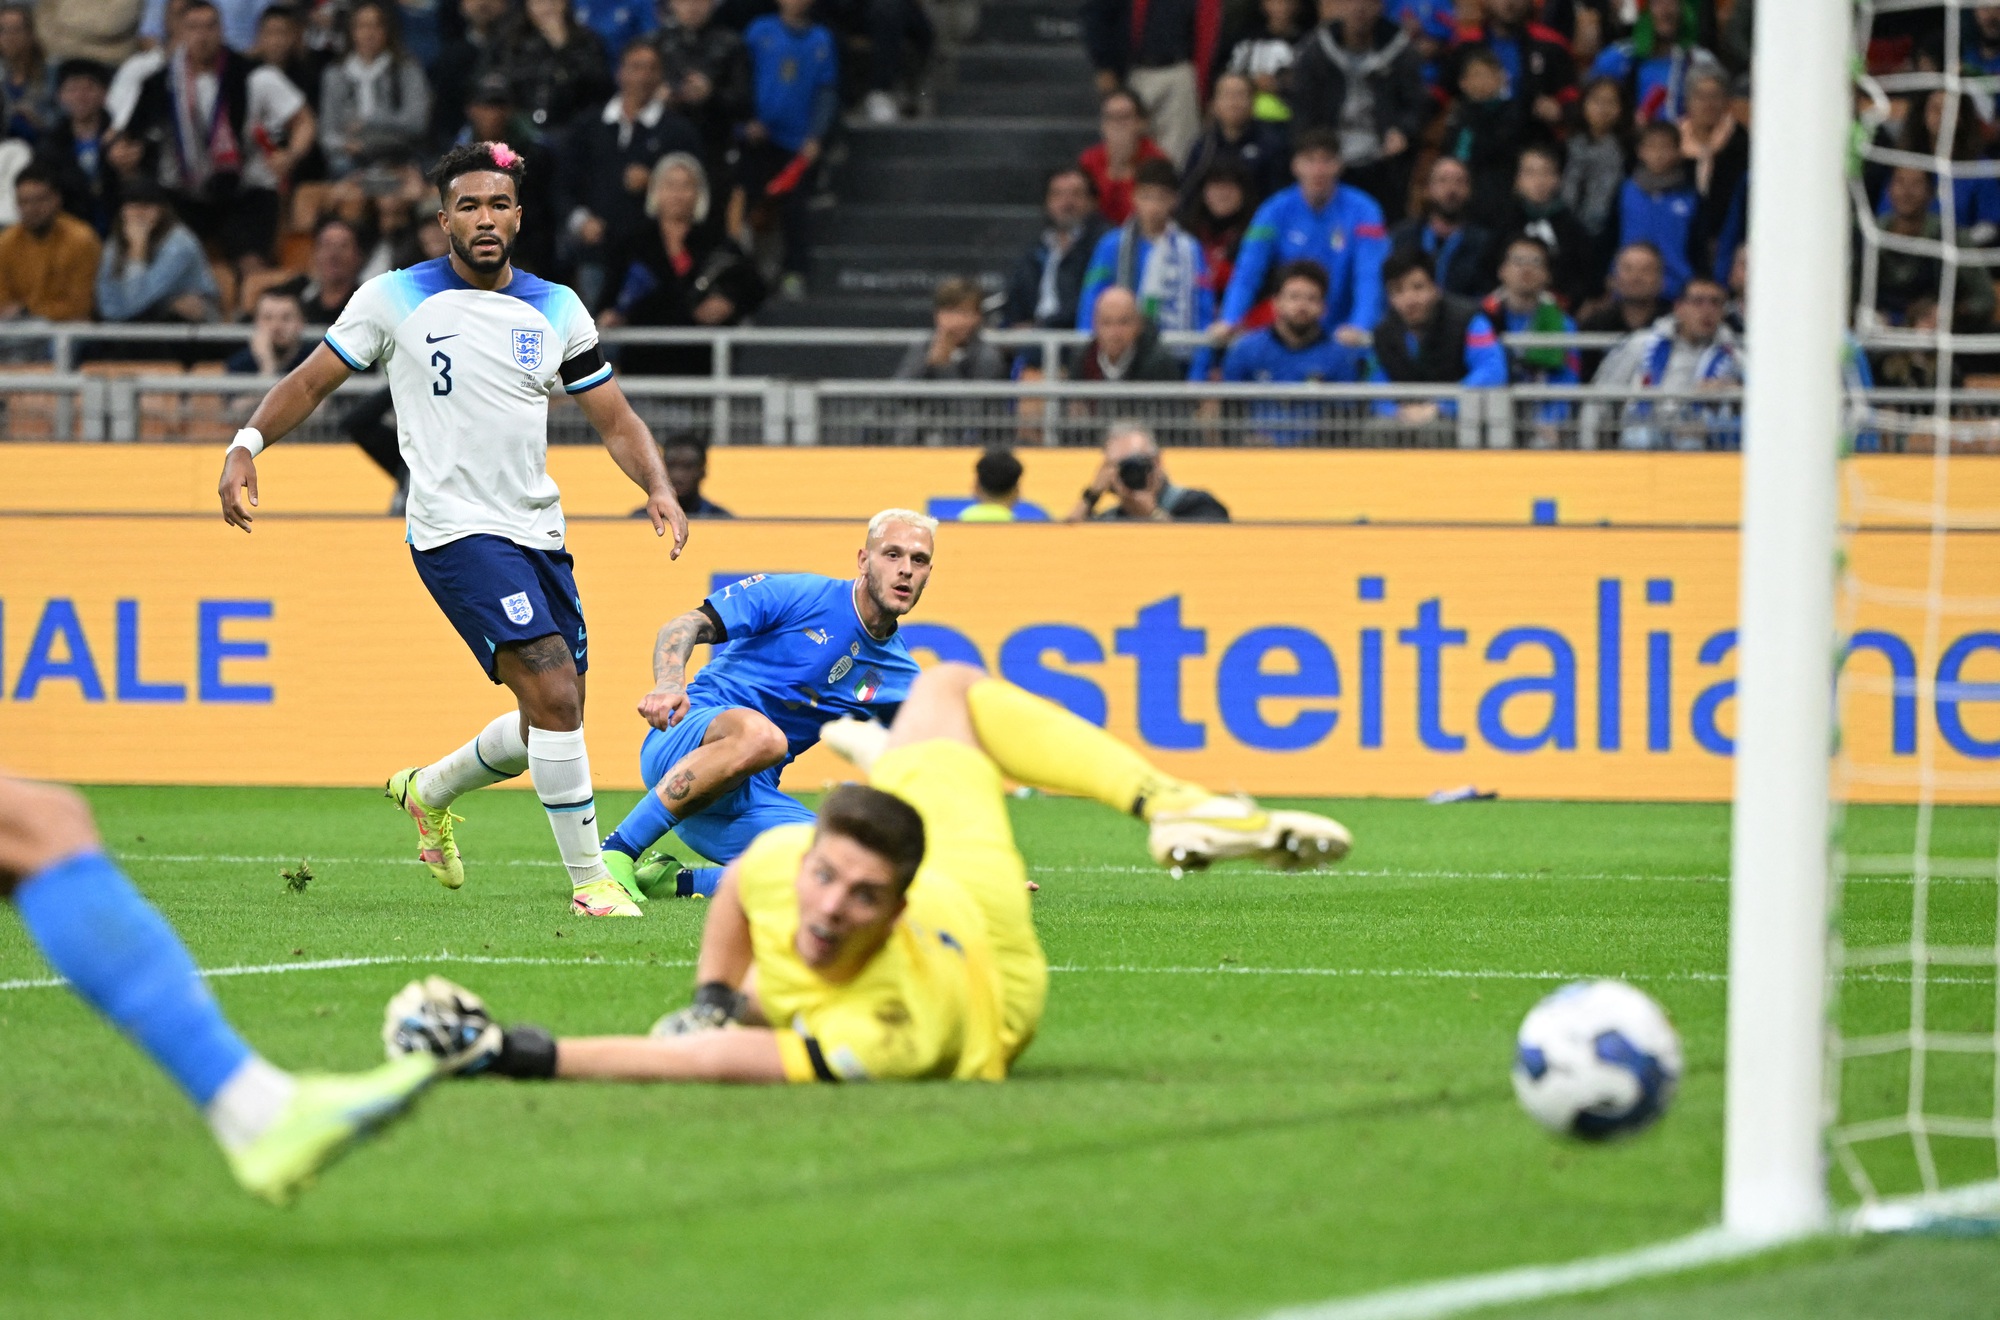 Thua sốc trên đất Ý, tuyển Anh rớt hạng Nations League - Ảnh 4.